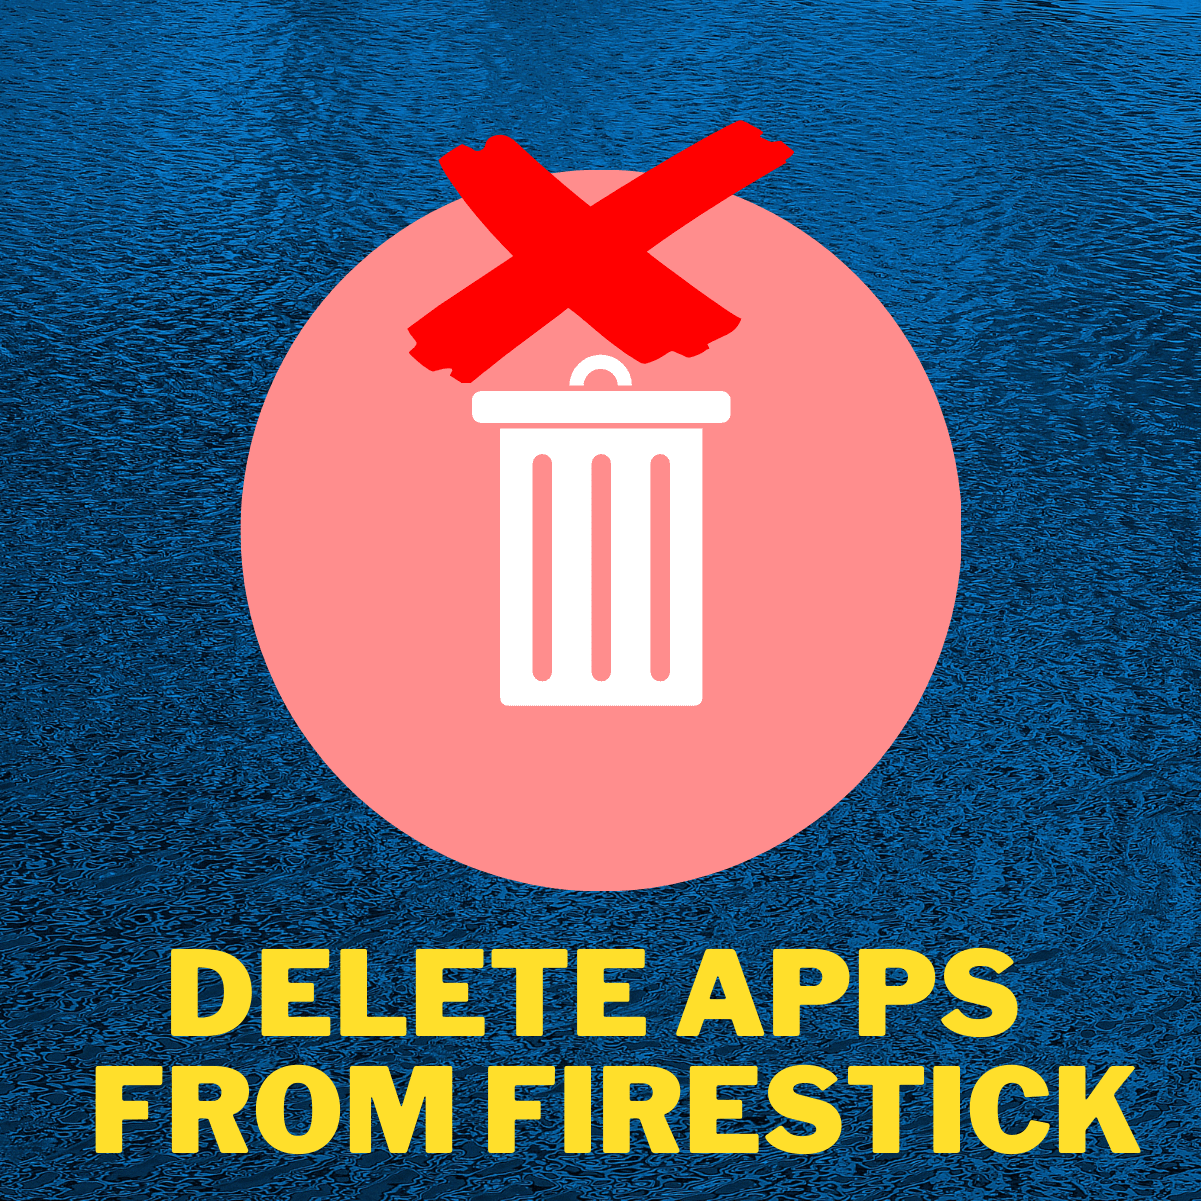 delete apps on firestick